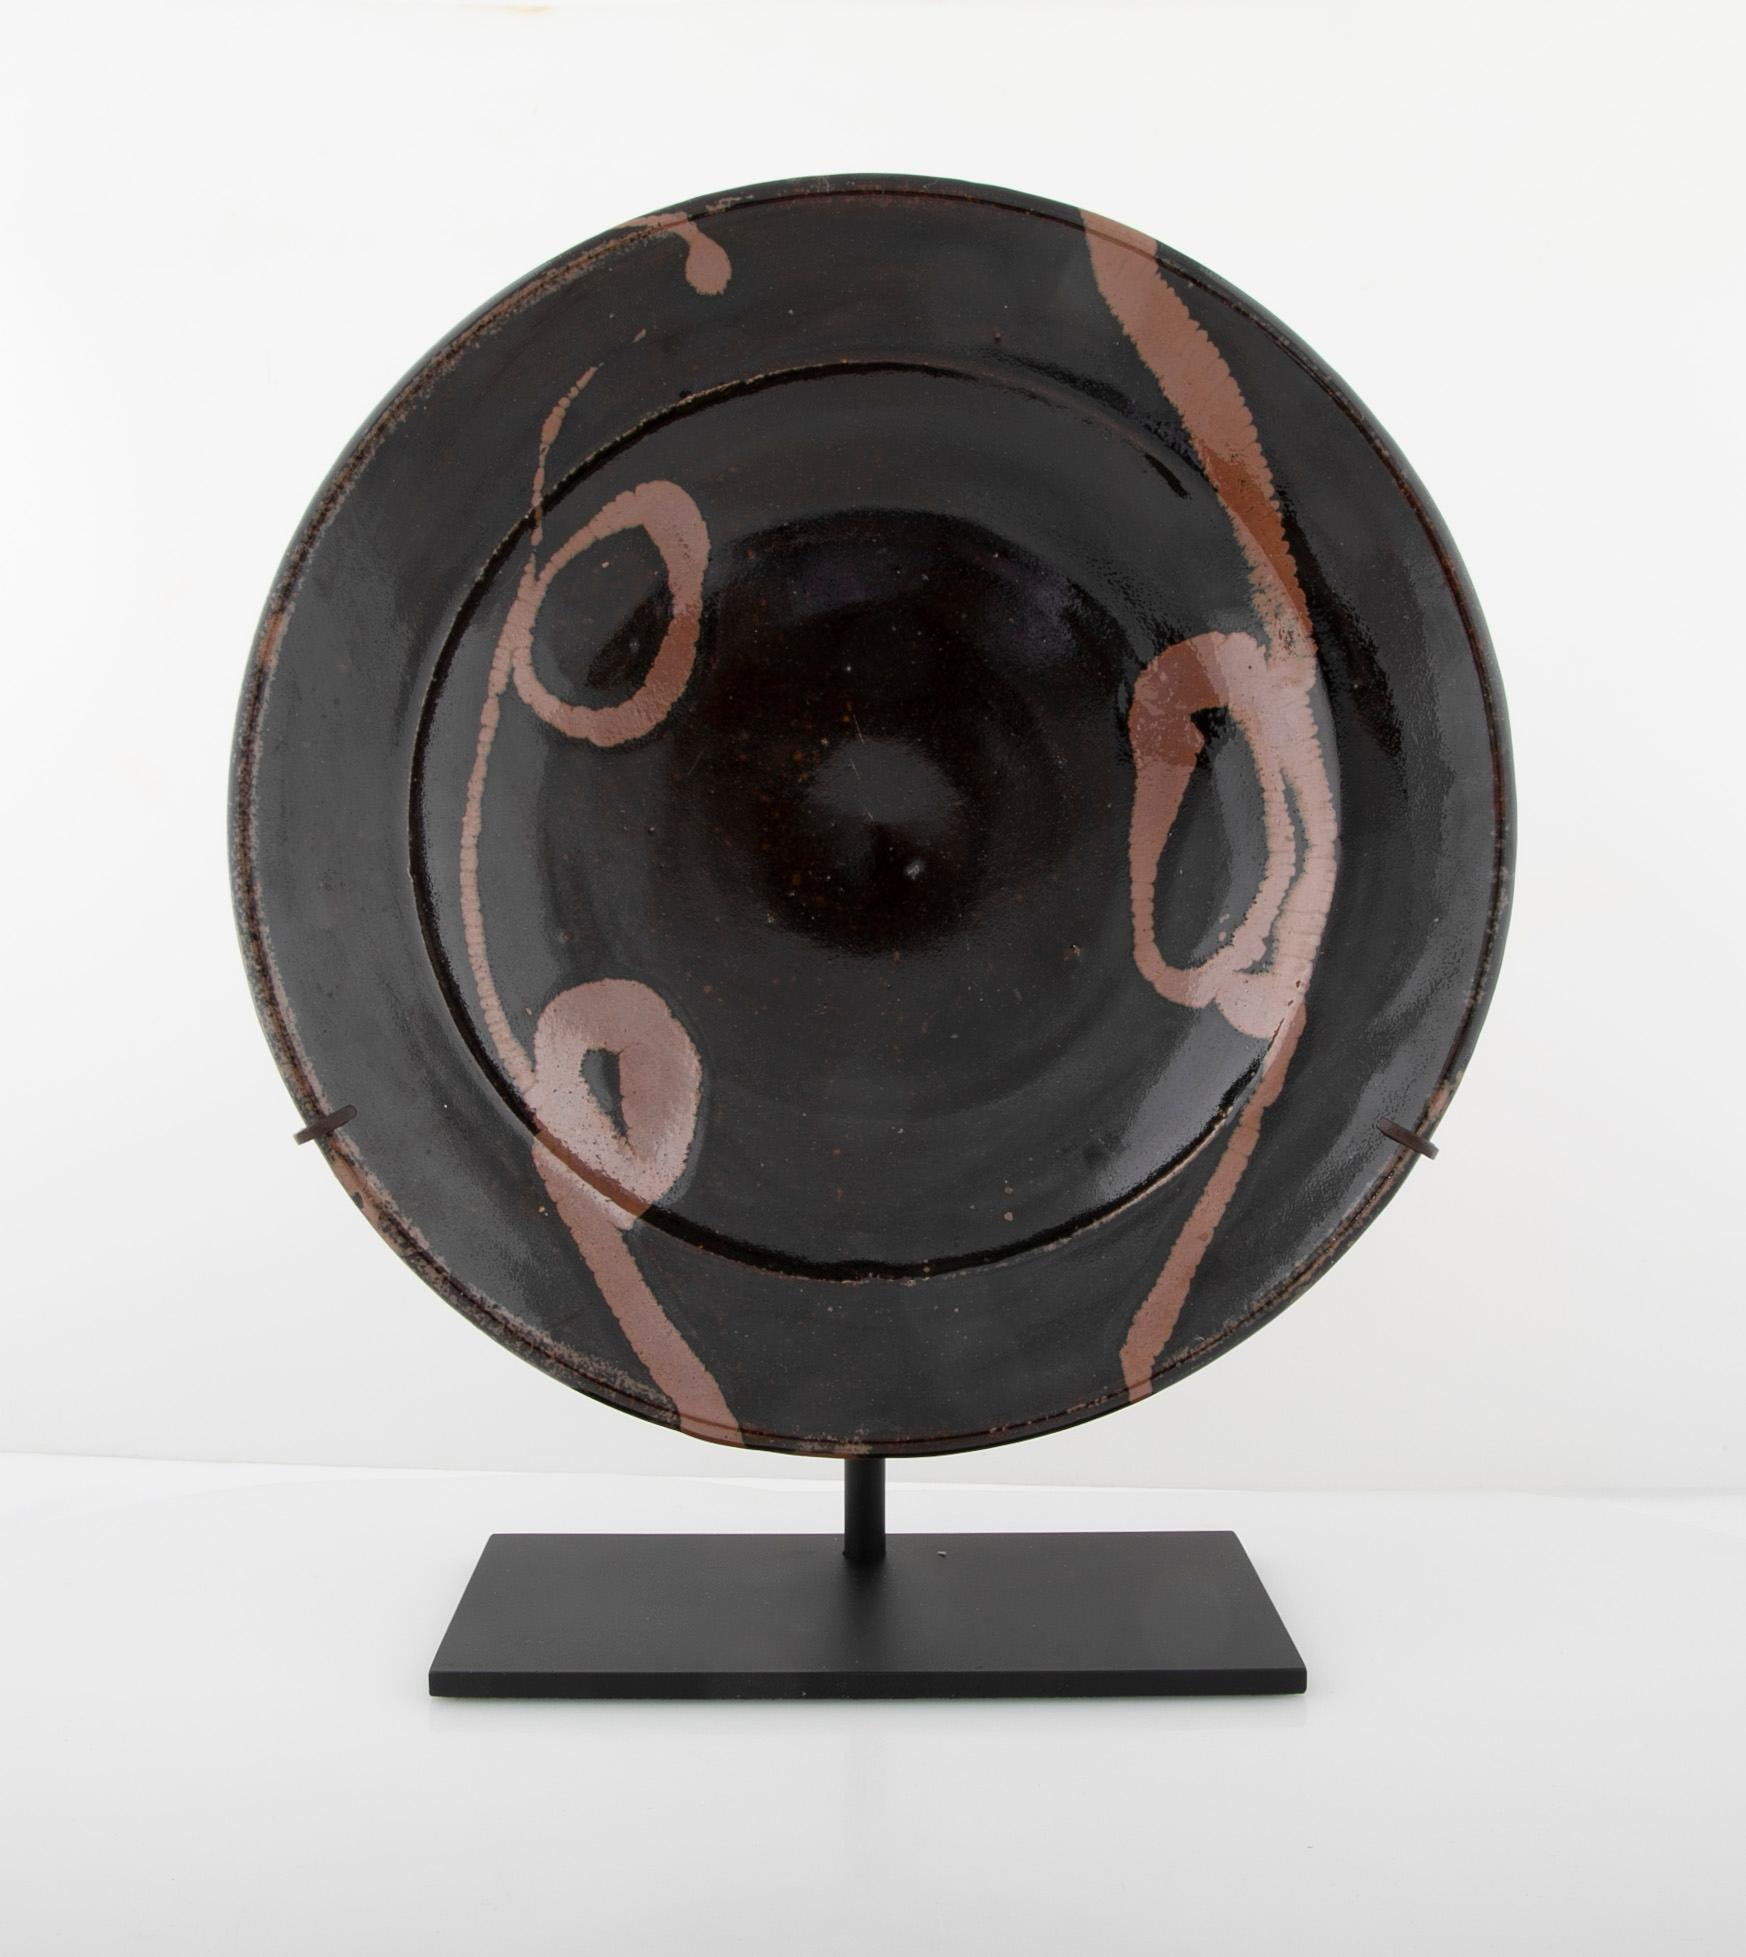 Shoji Hamada Japanisches Ladegerät aus Ton mit schwarzer Glasur und terrakottafarbenem Glasurdekor, ca. 1960er Jahre. Auf zeitgenössischem Stand. Das Stück ist unsigniert und kann daher nicht mit Sicherheit als ein Werk von Shoji Hamada bezeichnet